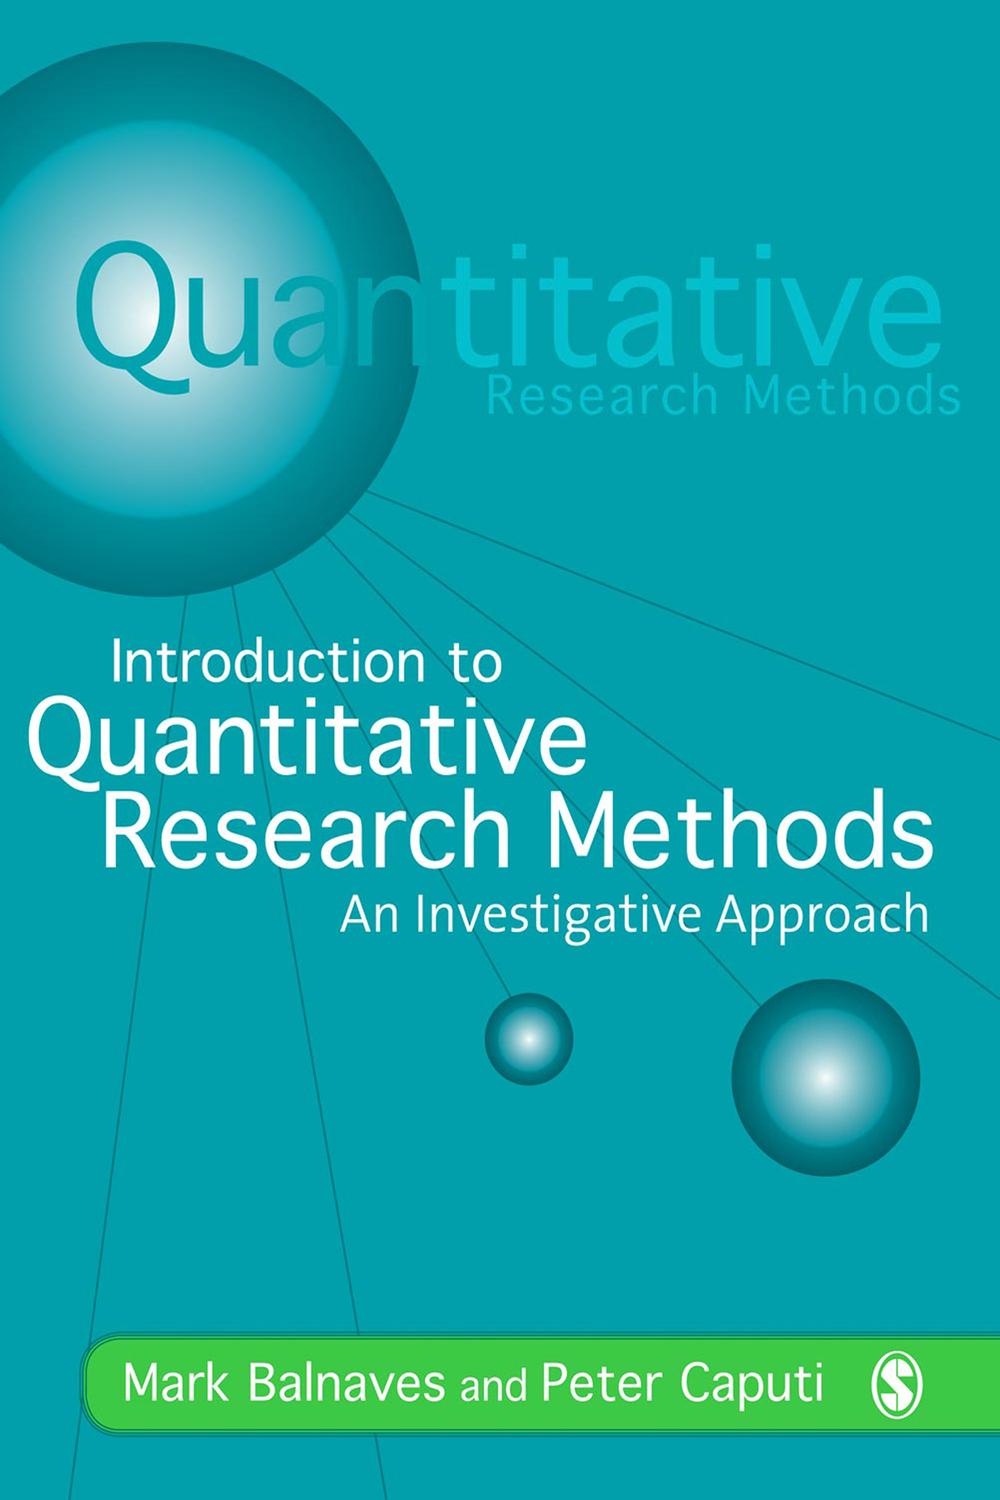 quantitative research methods books pdf